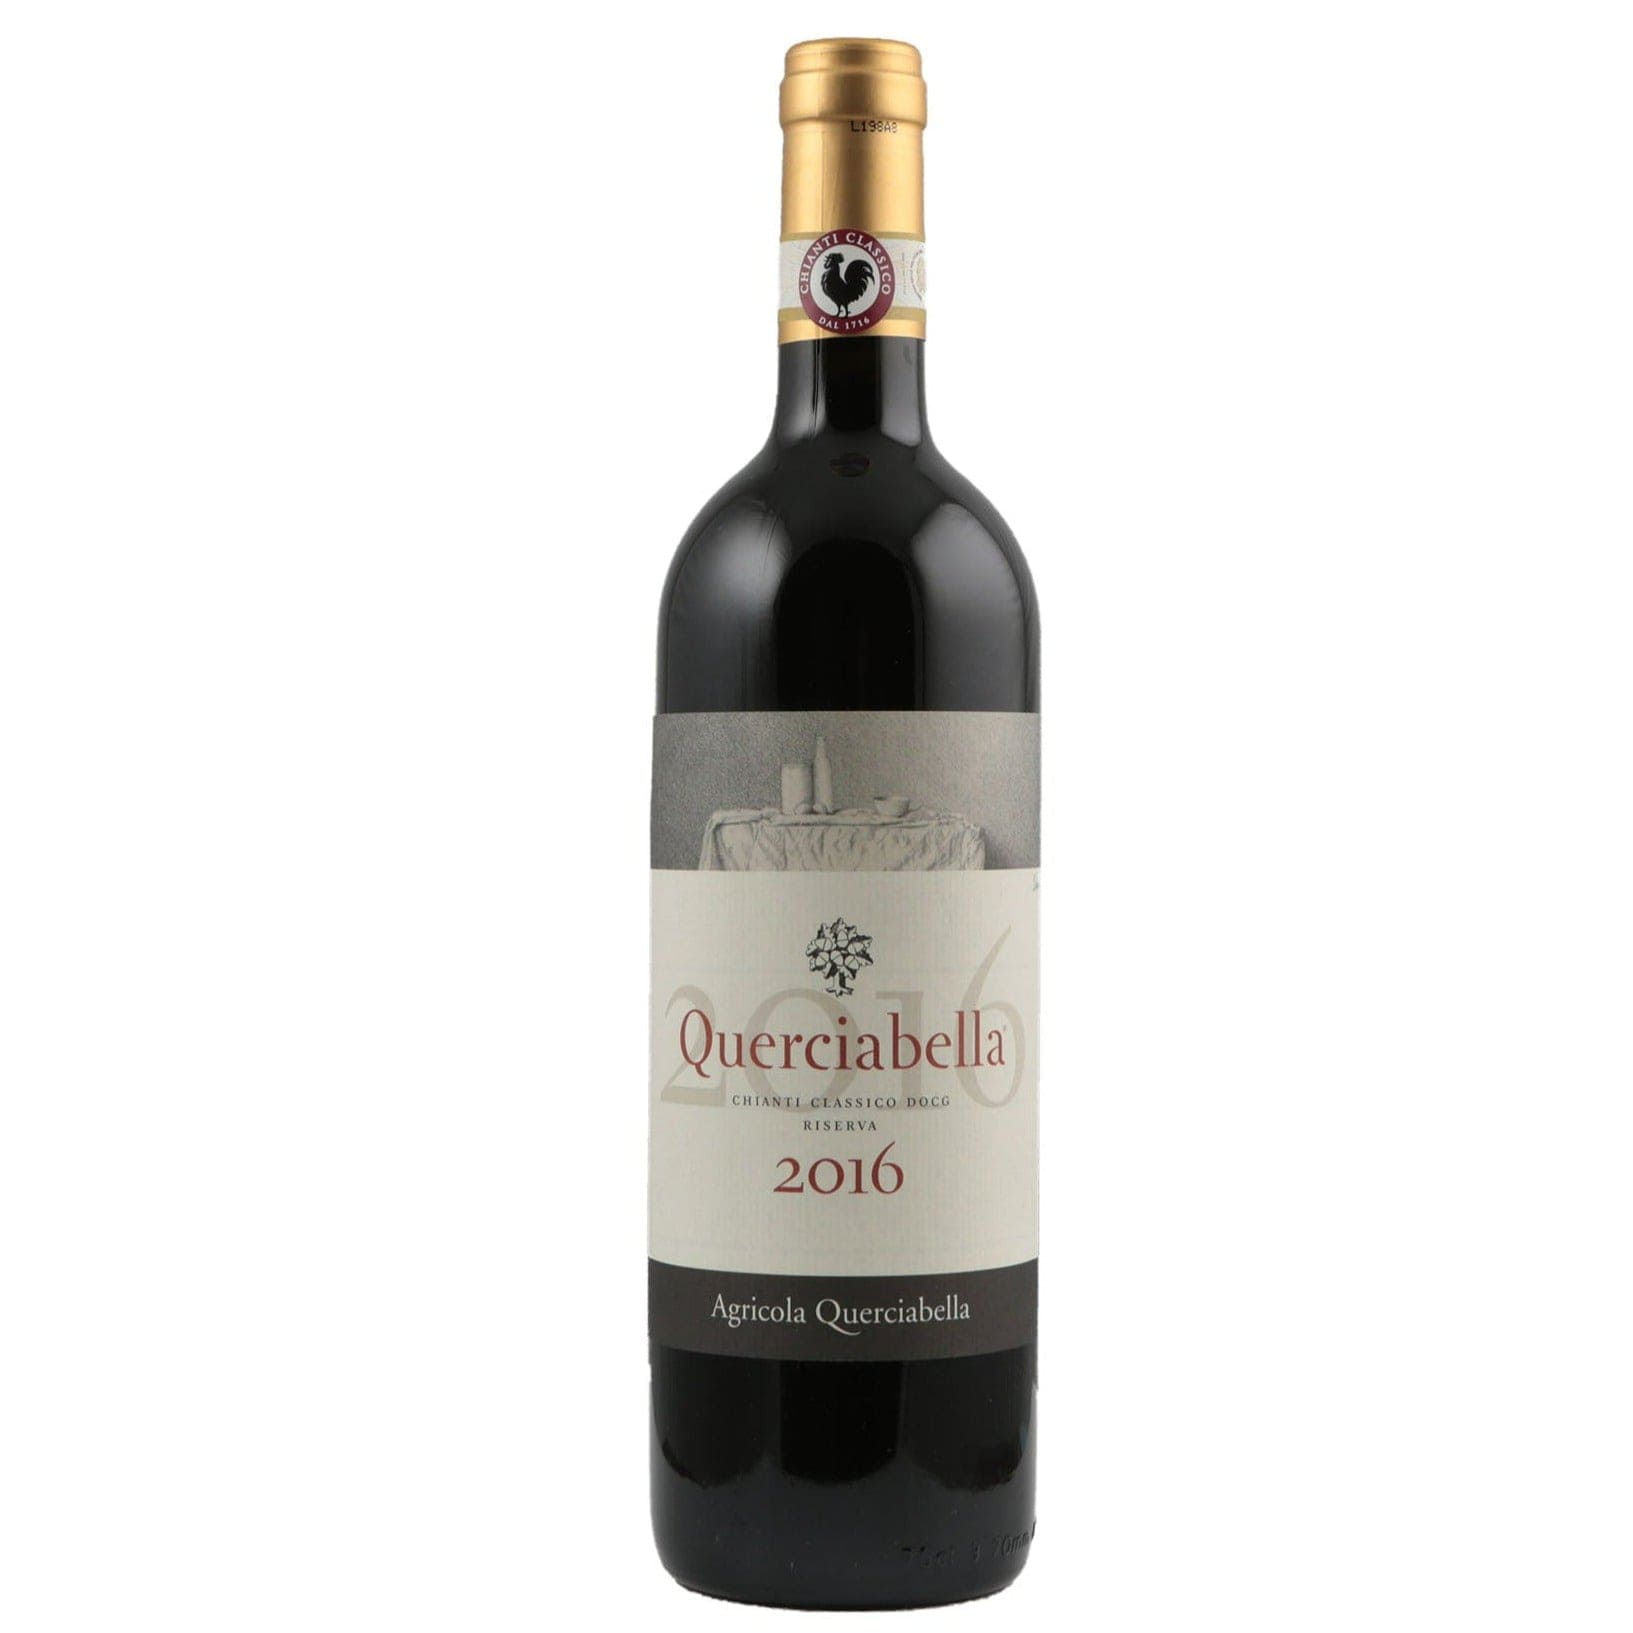 Single bottle of Red wine Querciabella, Chianti Classico Riserva DOCG, Chianti Classico, 2016 100% Sangiovese